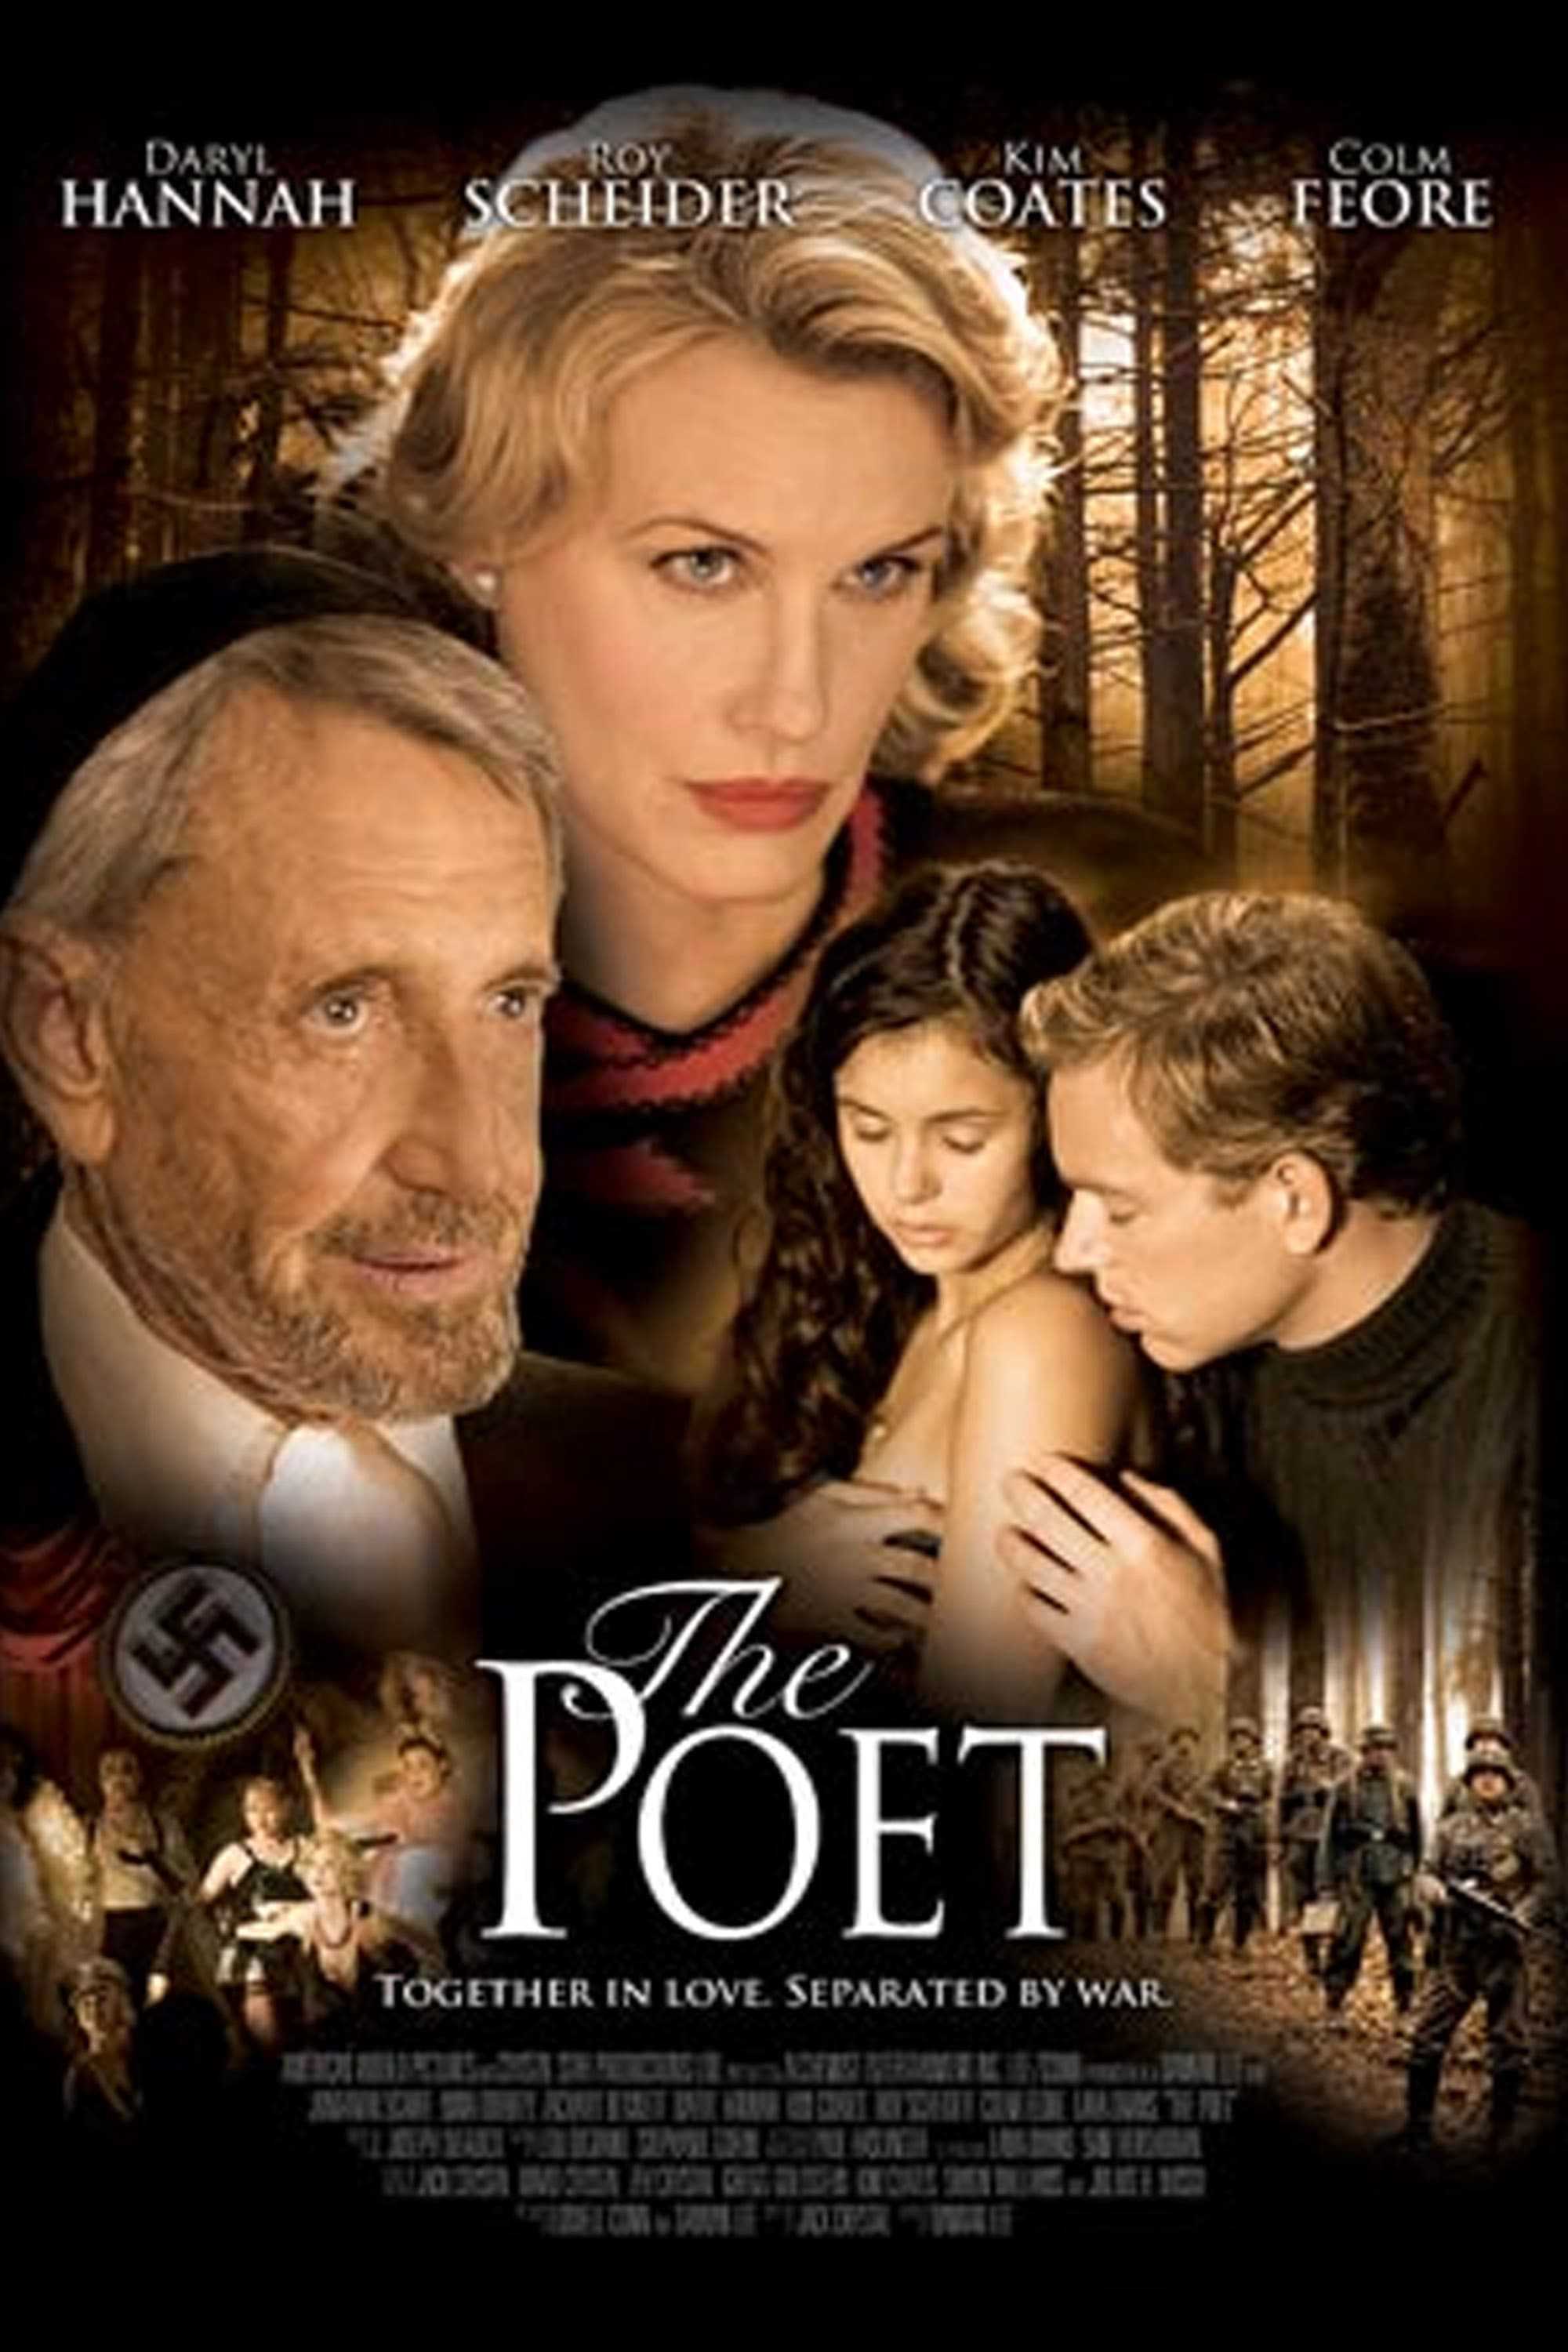 The poet - The poet